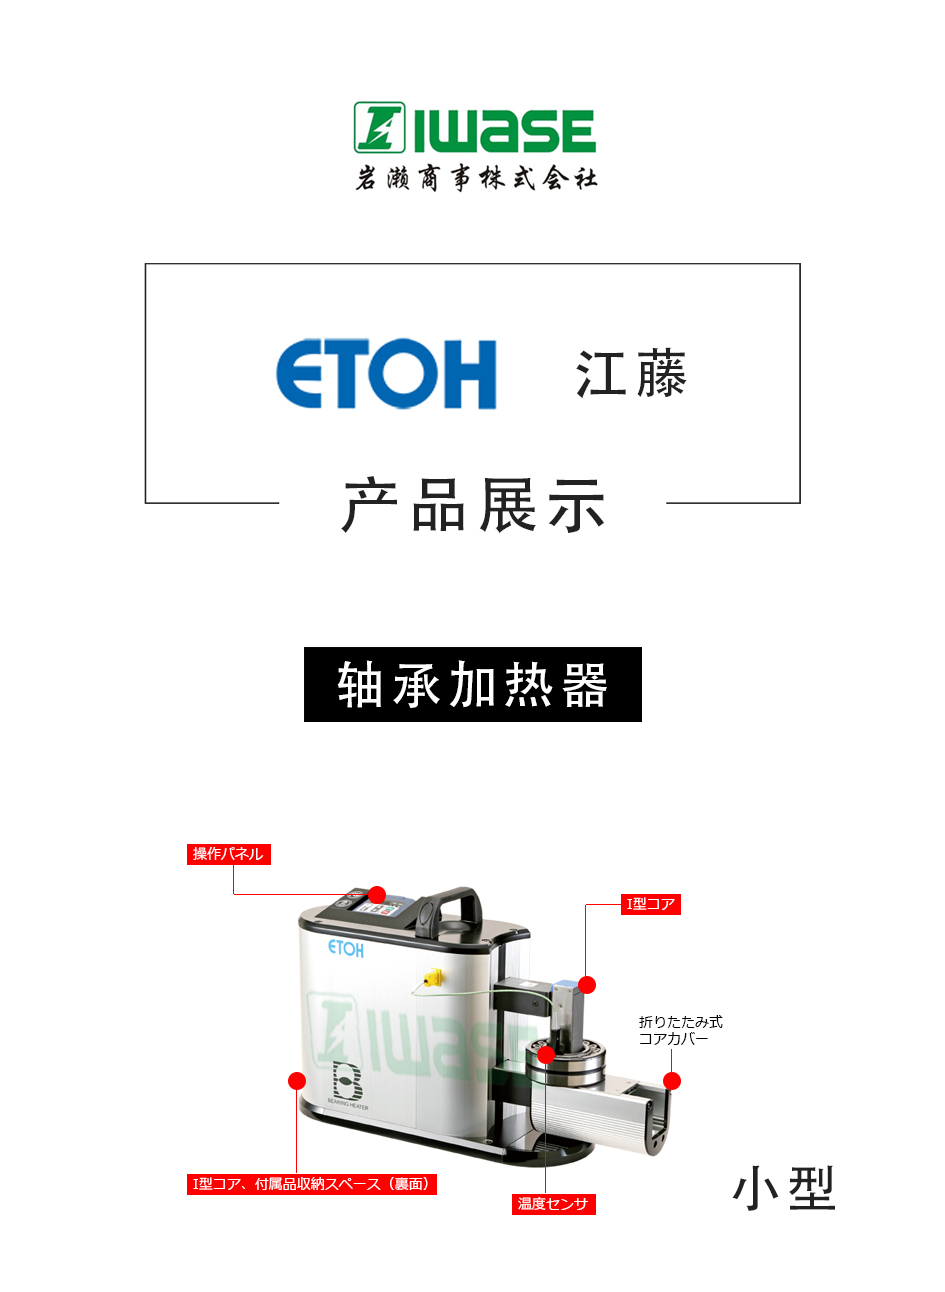 ETOH江藤电机/轴承加热器/温度传感器/淬火机/IHE0110A